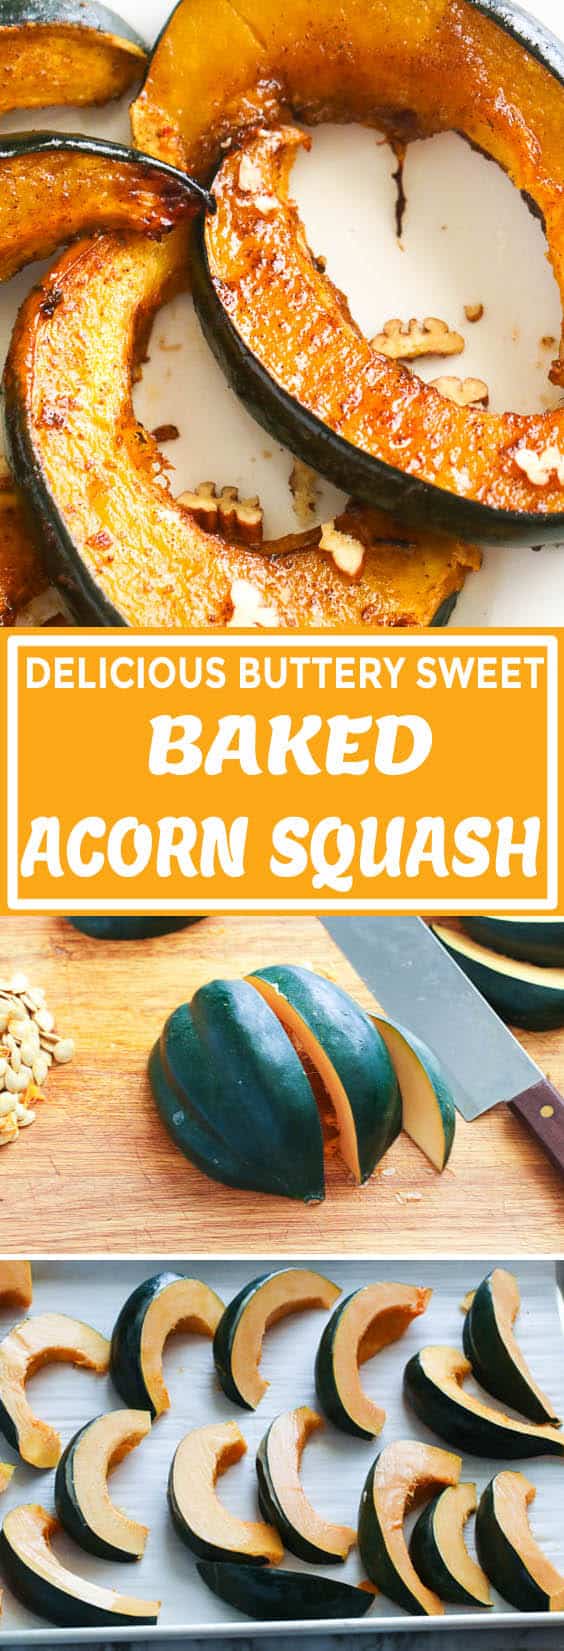 Baked Acorn Squash